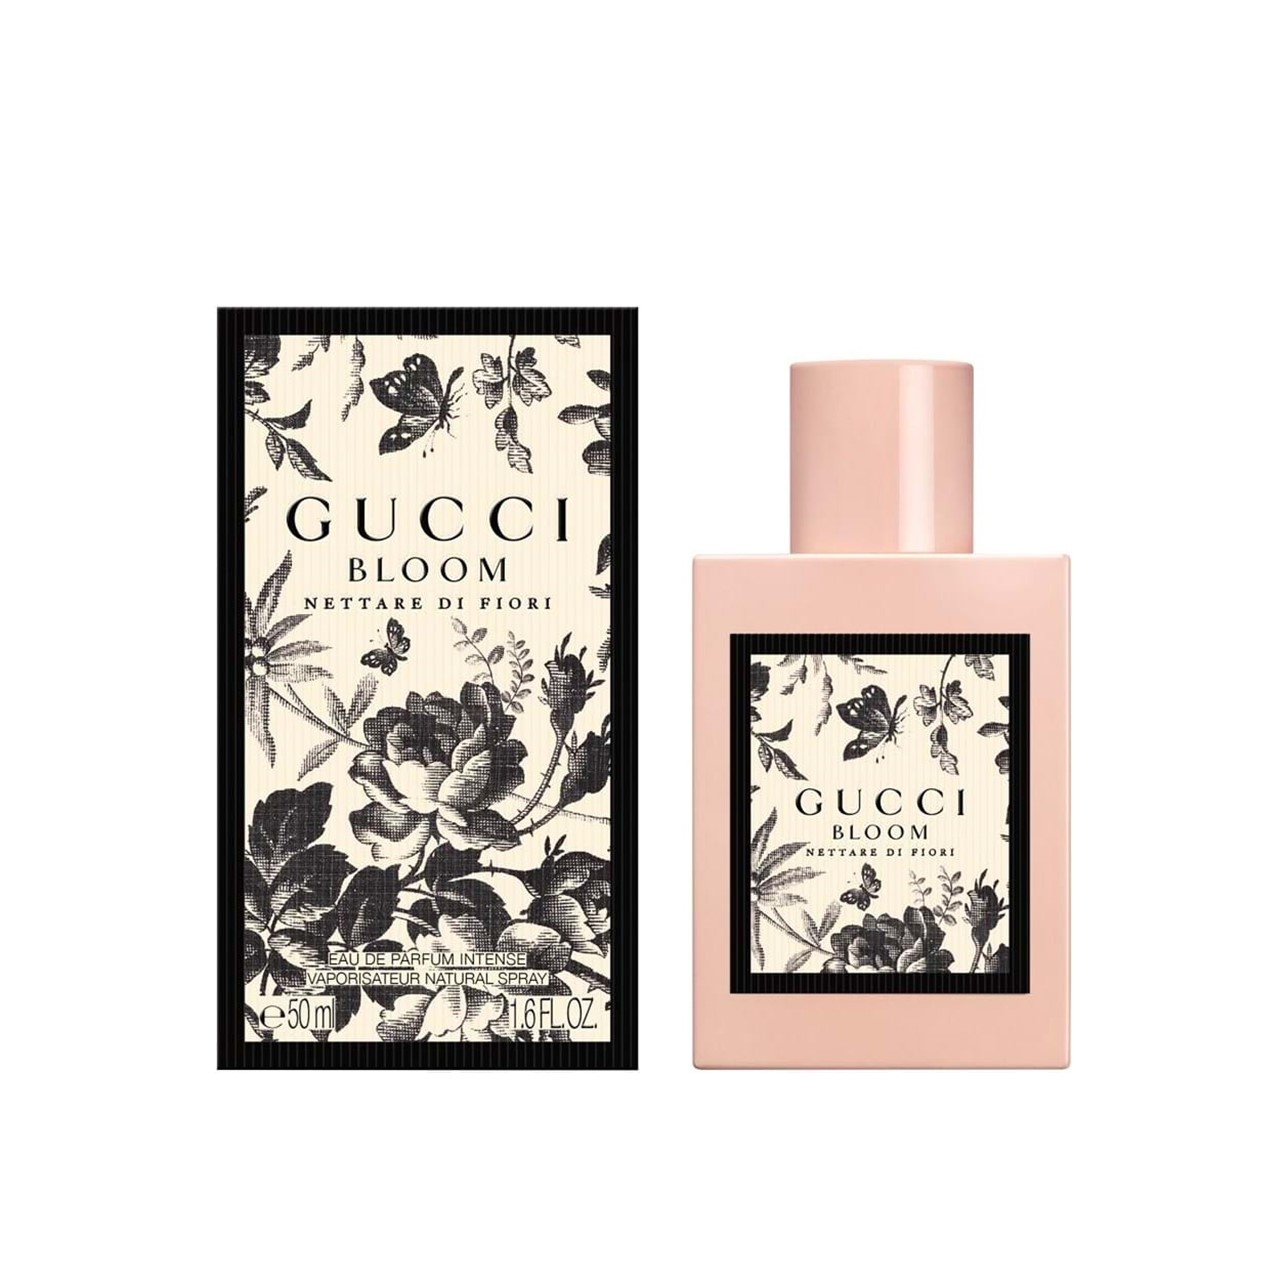 Gucci Bloom Nettare Di Fiori Eau de Parfum Intense 50ml